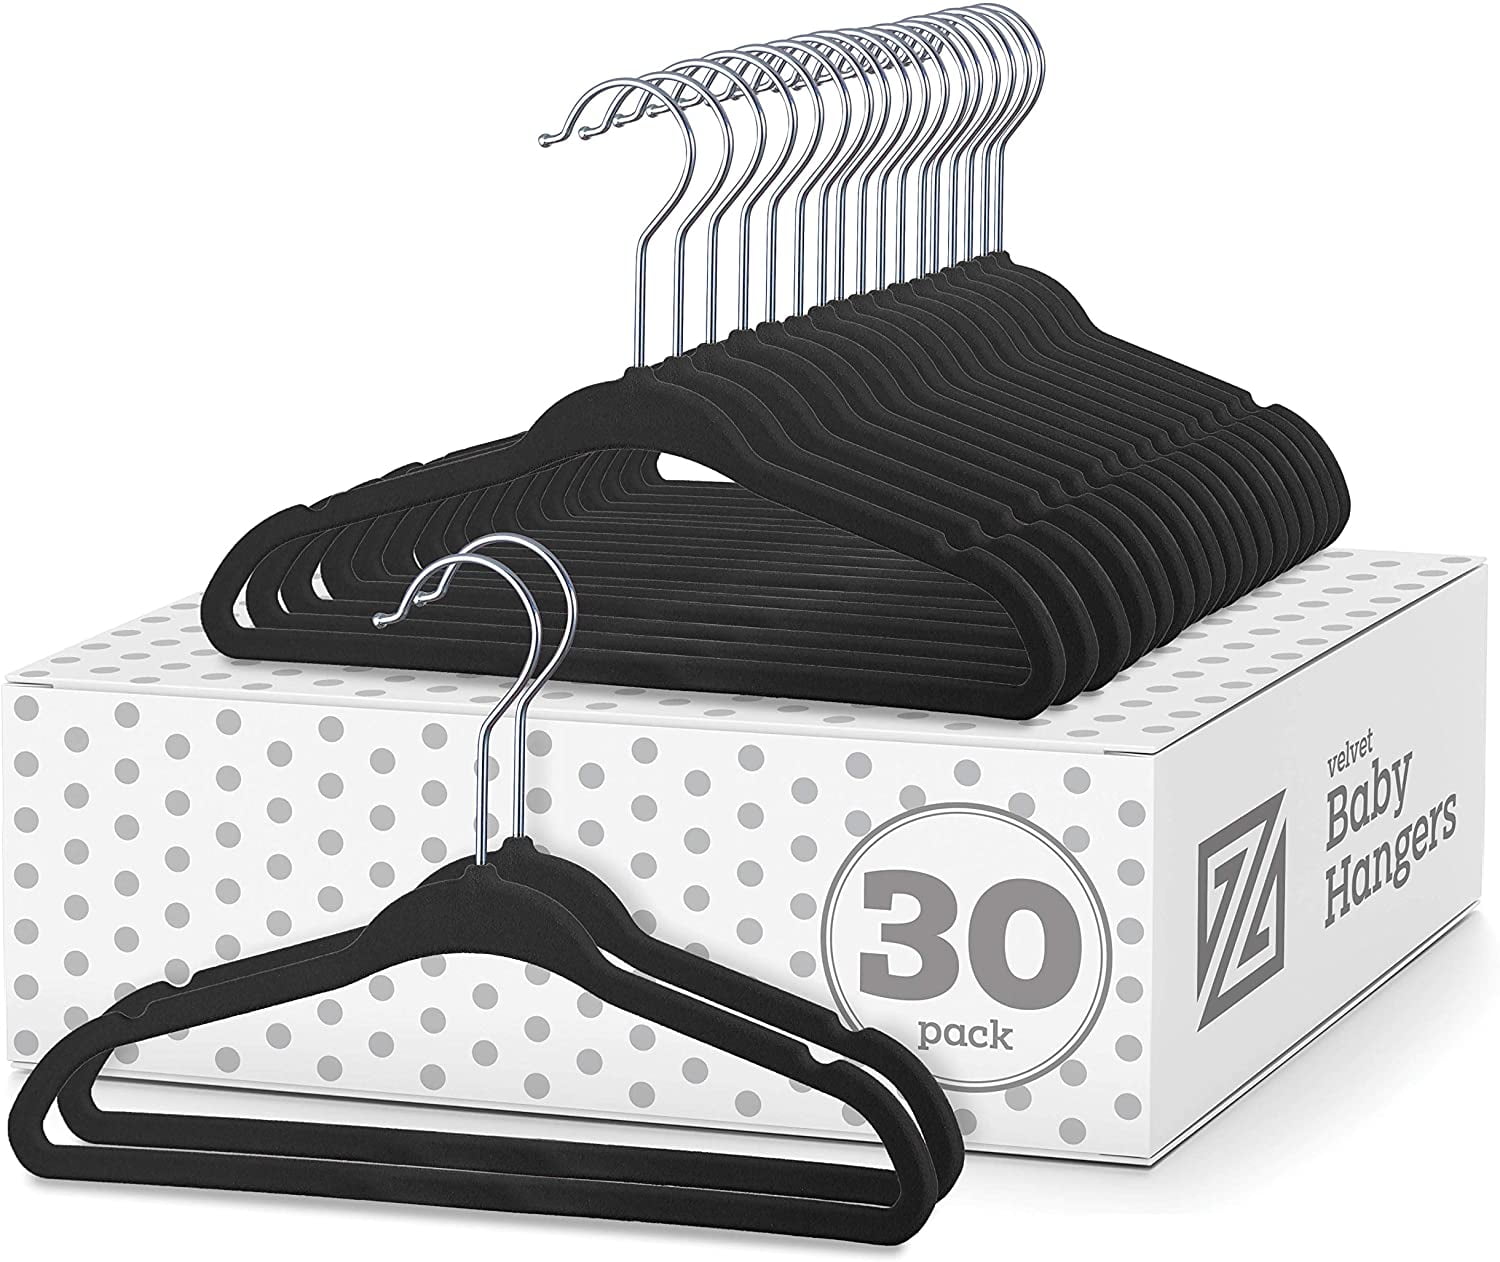 Zober Velvet Kids Hangers for Closet - Pack of 50 Non Slip Childrens  Hangers for Shirts, Pants & Dresses w/Swivel Hook - Durable Kids Clothes  Hanger